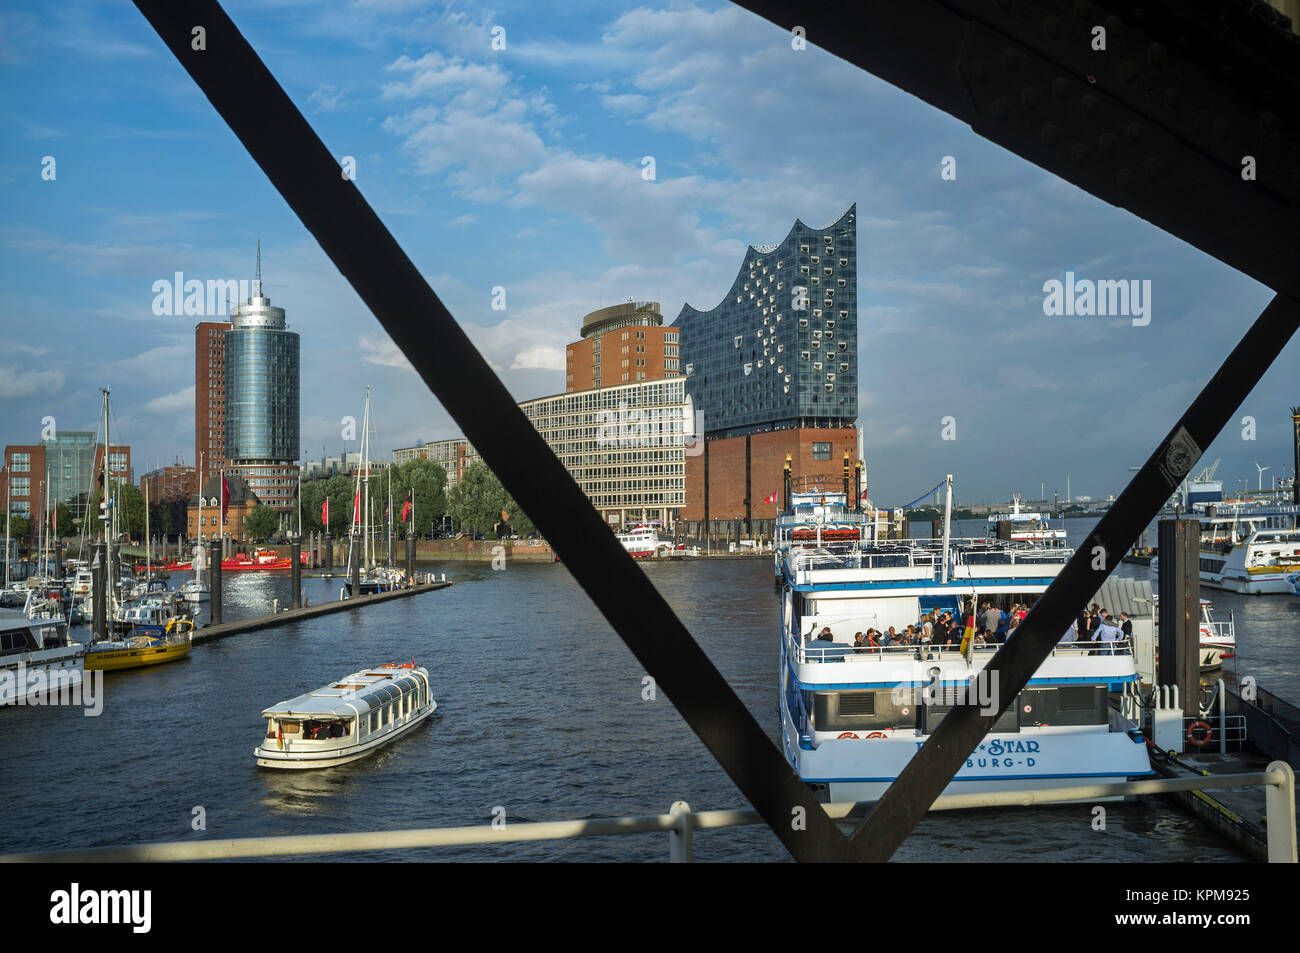 Hamburg, eine der schönsten und beliebtesten Reiseziele der Welt. Neuer Hafen - Skyline mit der Elbphilharmonie Stockfoto